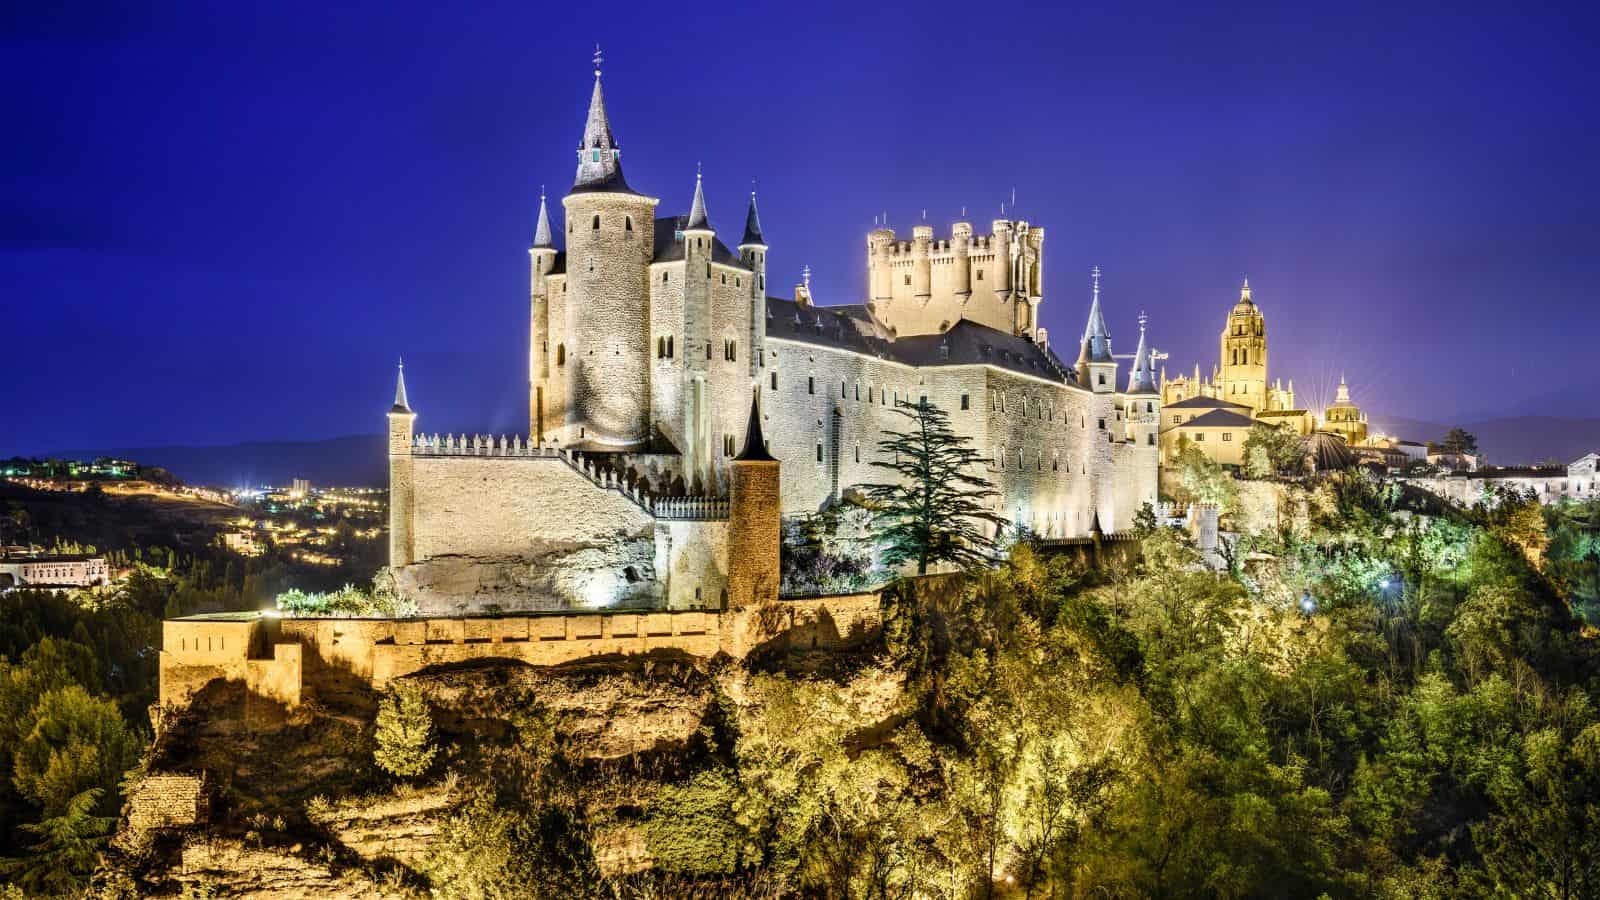 The Alcazar Castle Spain